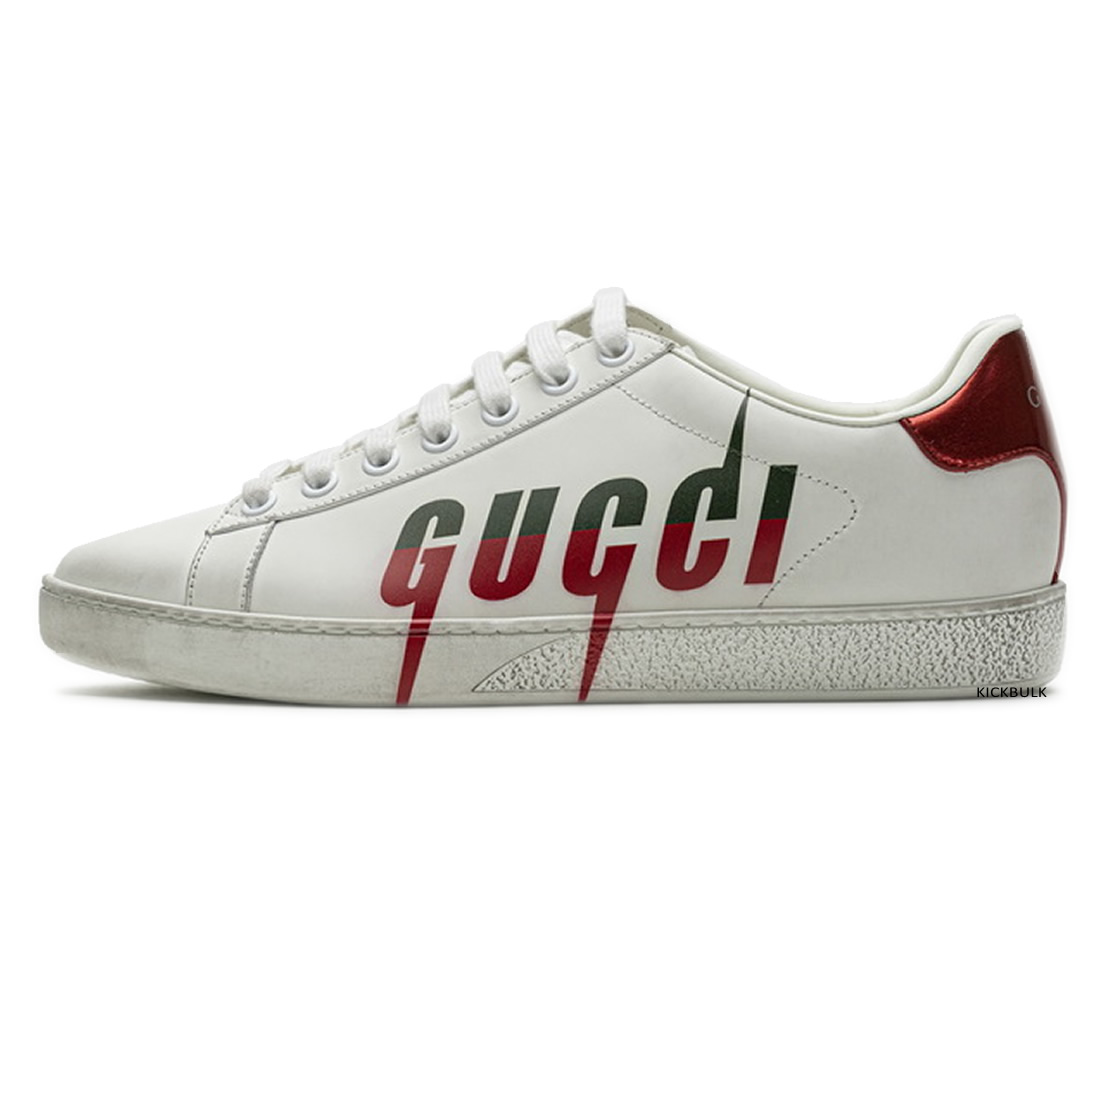 Gucci Lightning Sneakers 429446a39gq9085 1 - www.kickbulk.org